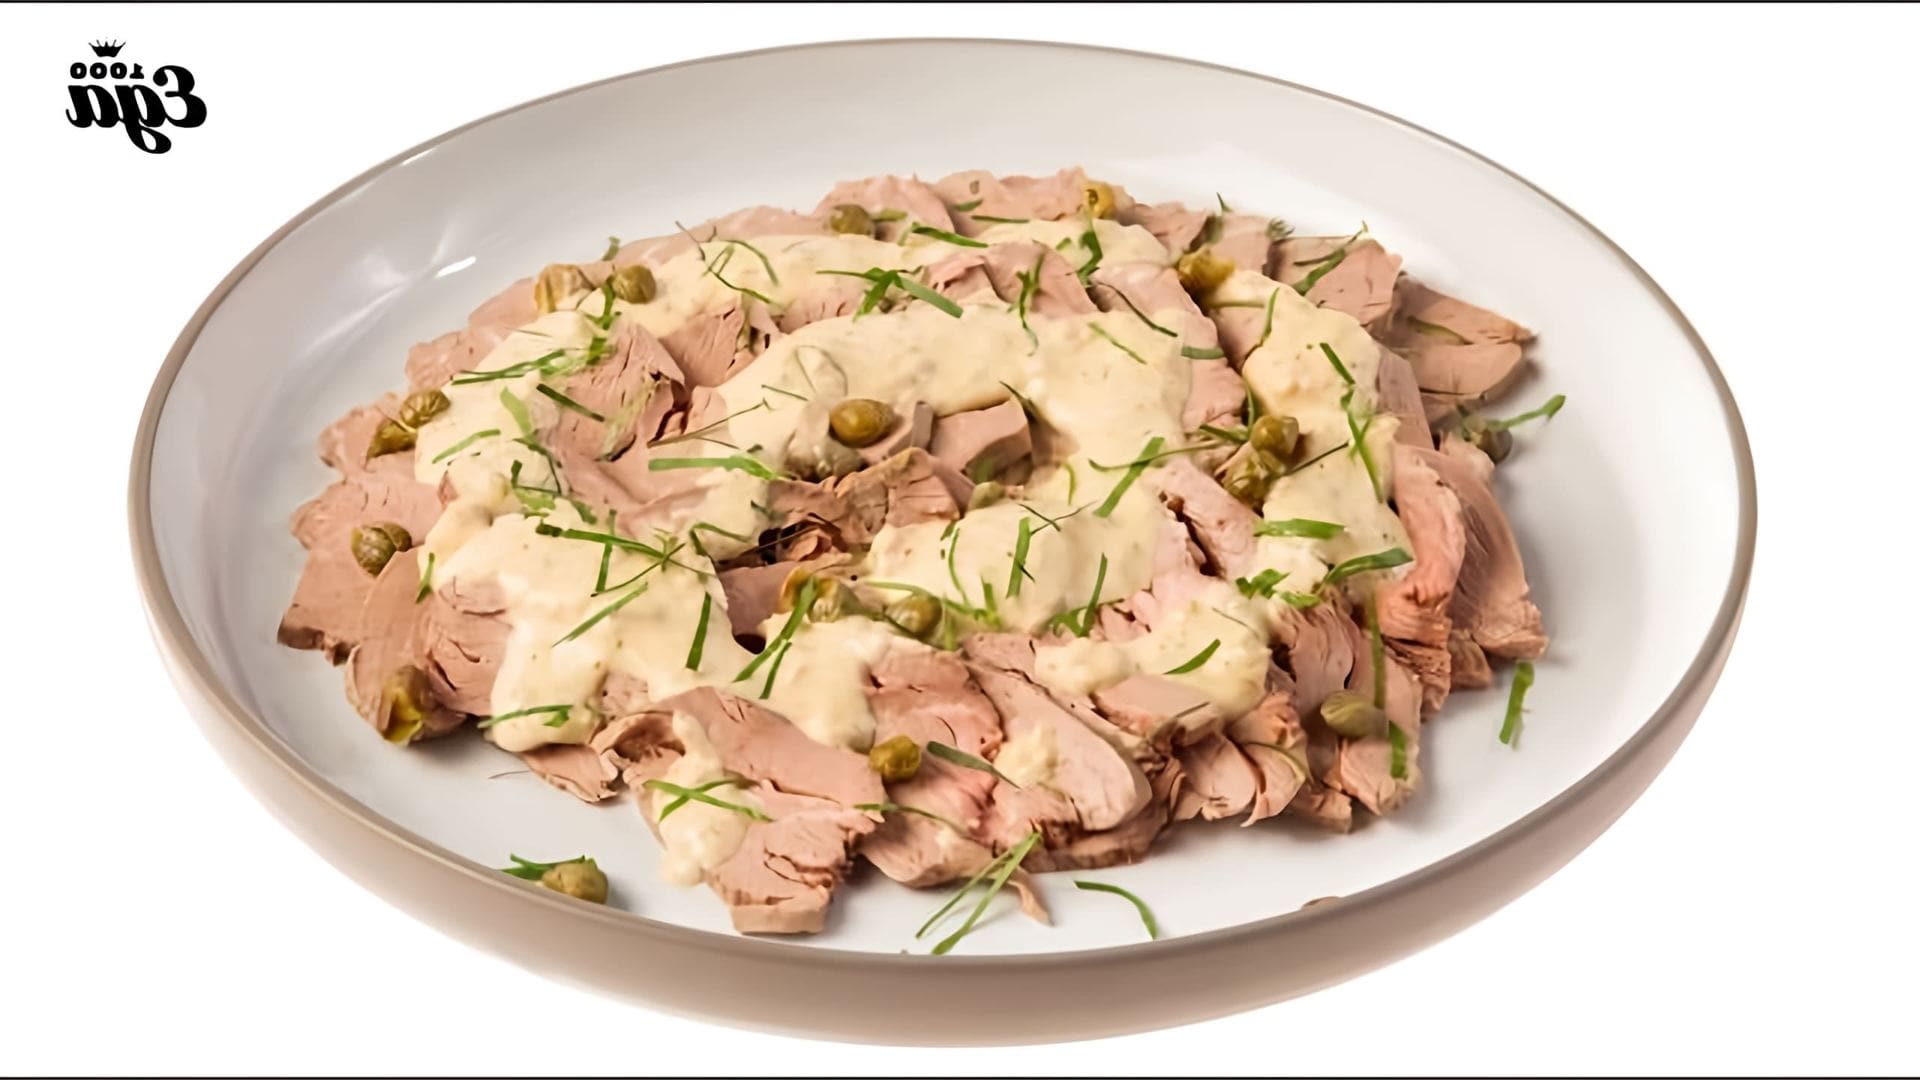 Вителло тоннато - это блюдо из телятины, которое подается с соусом из тунца